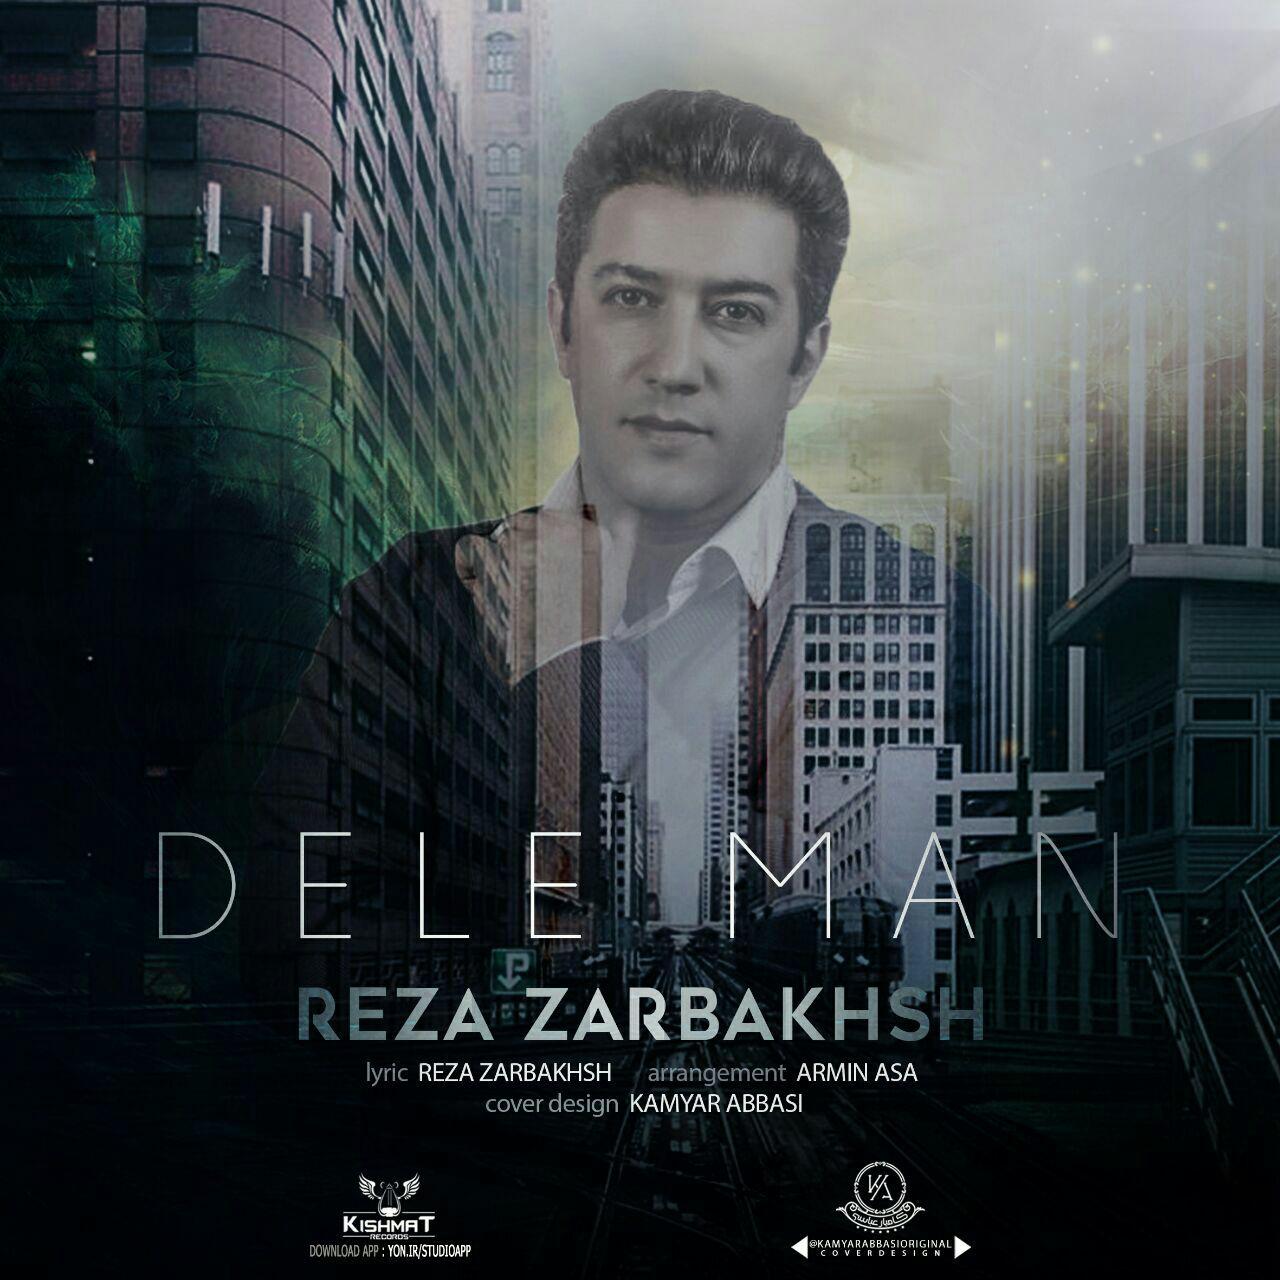  دانلود آهنگ جدید رضا زربخش - دل من | Download New Music By Reza Zarbakhsh - Dele Man